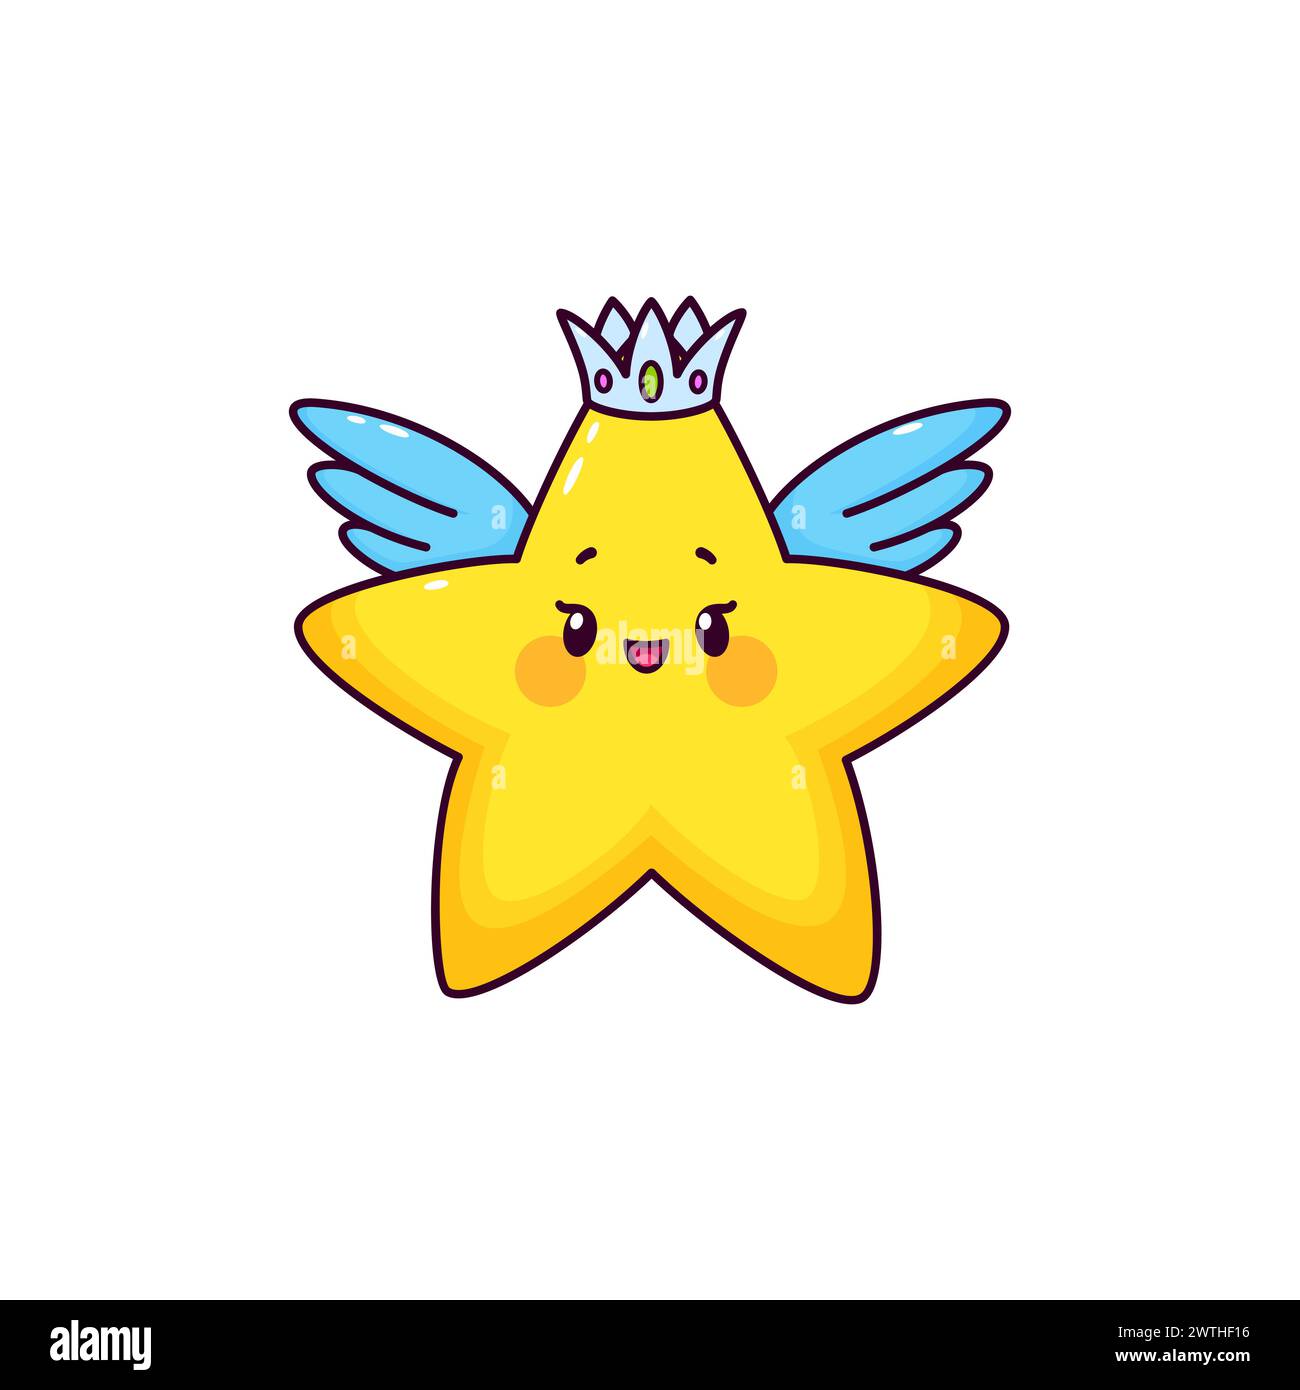 Cartoon glücklicher kawaii Star Engelsfigur mit süßem lächelndem Gesicht. Vektorfigur eines kleinen funkelnden Sterns mit gelbem Glanz, Engelsflügeln und silberner Krone. Kindliches Superstar-Emoticon oder Weltraumemoji Stock Vektor